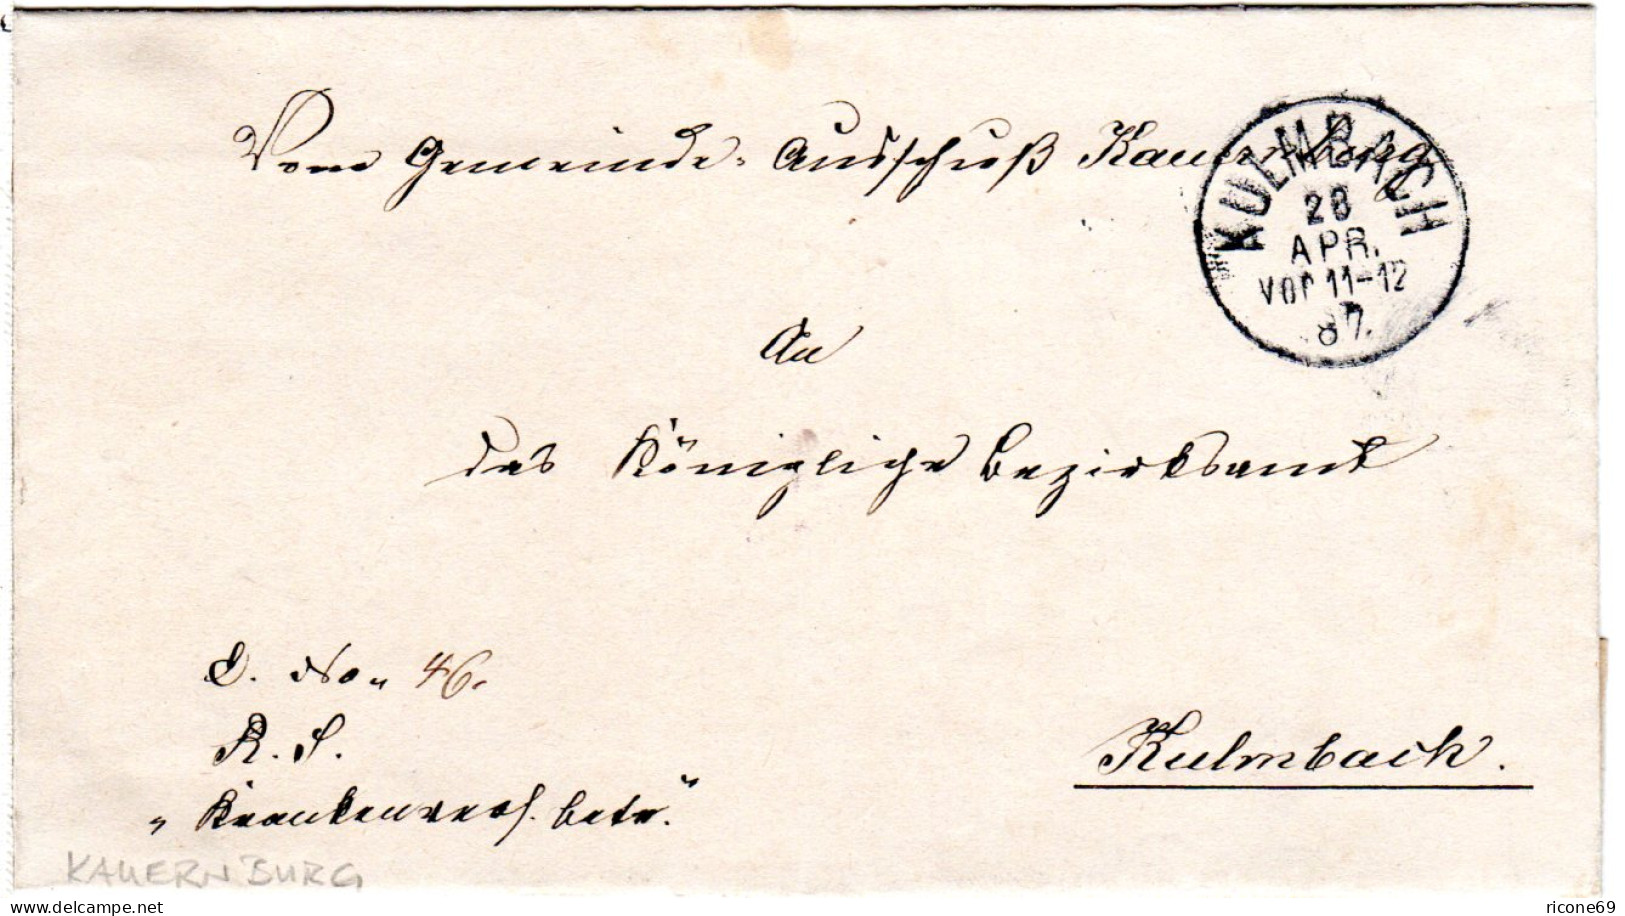 Bayern 1887, K1 KULMBACH Auf Amtsbrief Des Gemeinde Ausschuß Kauernburg. - Briefe U. Dokumente